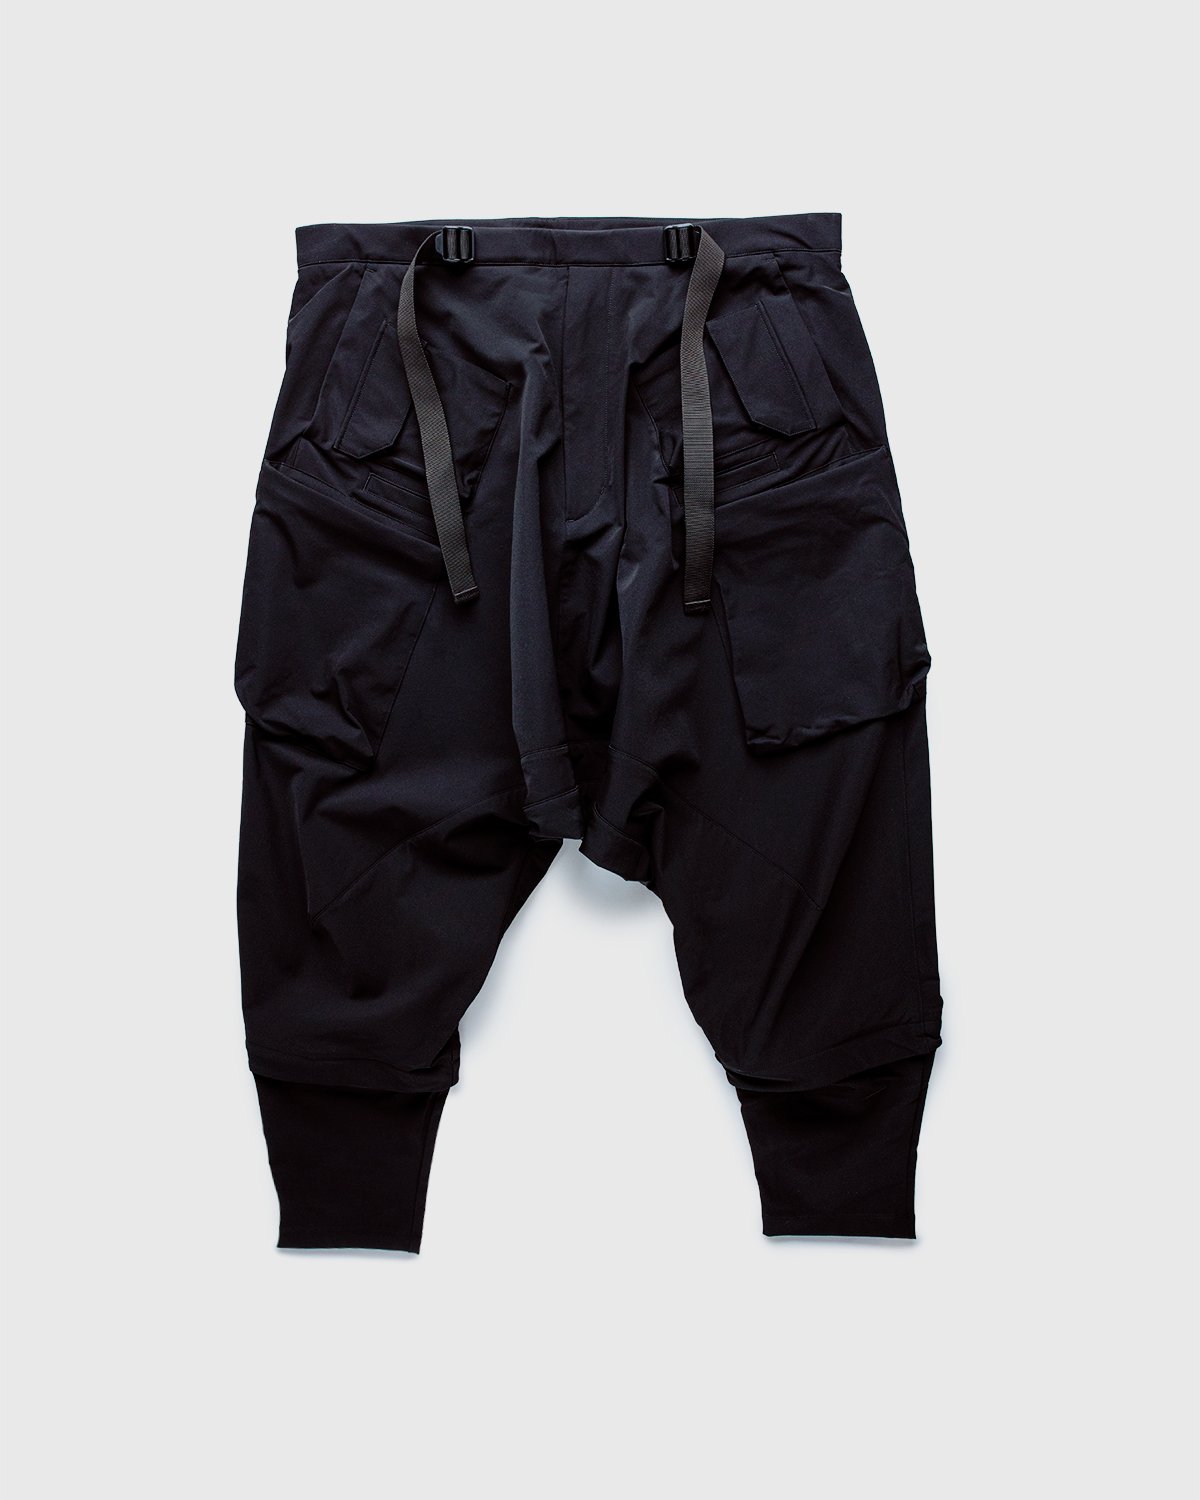 ACRONYM - P30A-DS Pants Black - Clothing - Black - Image 1